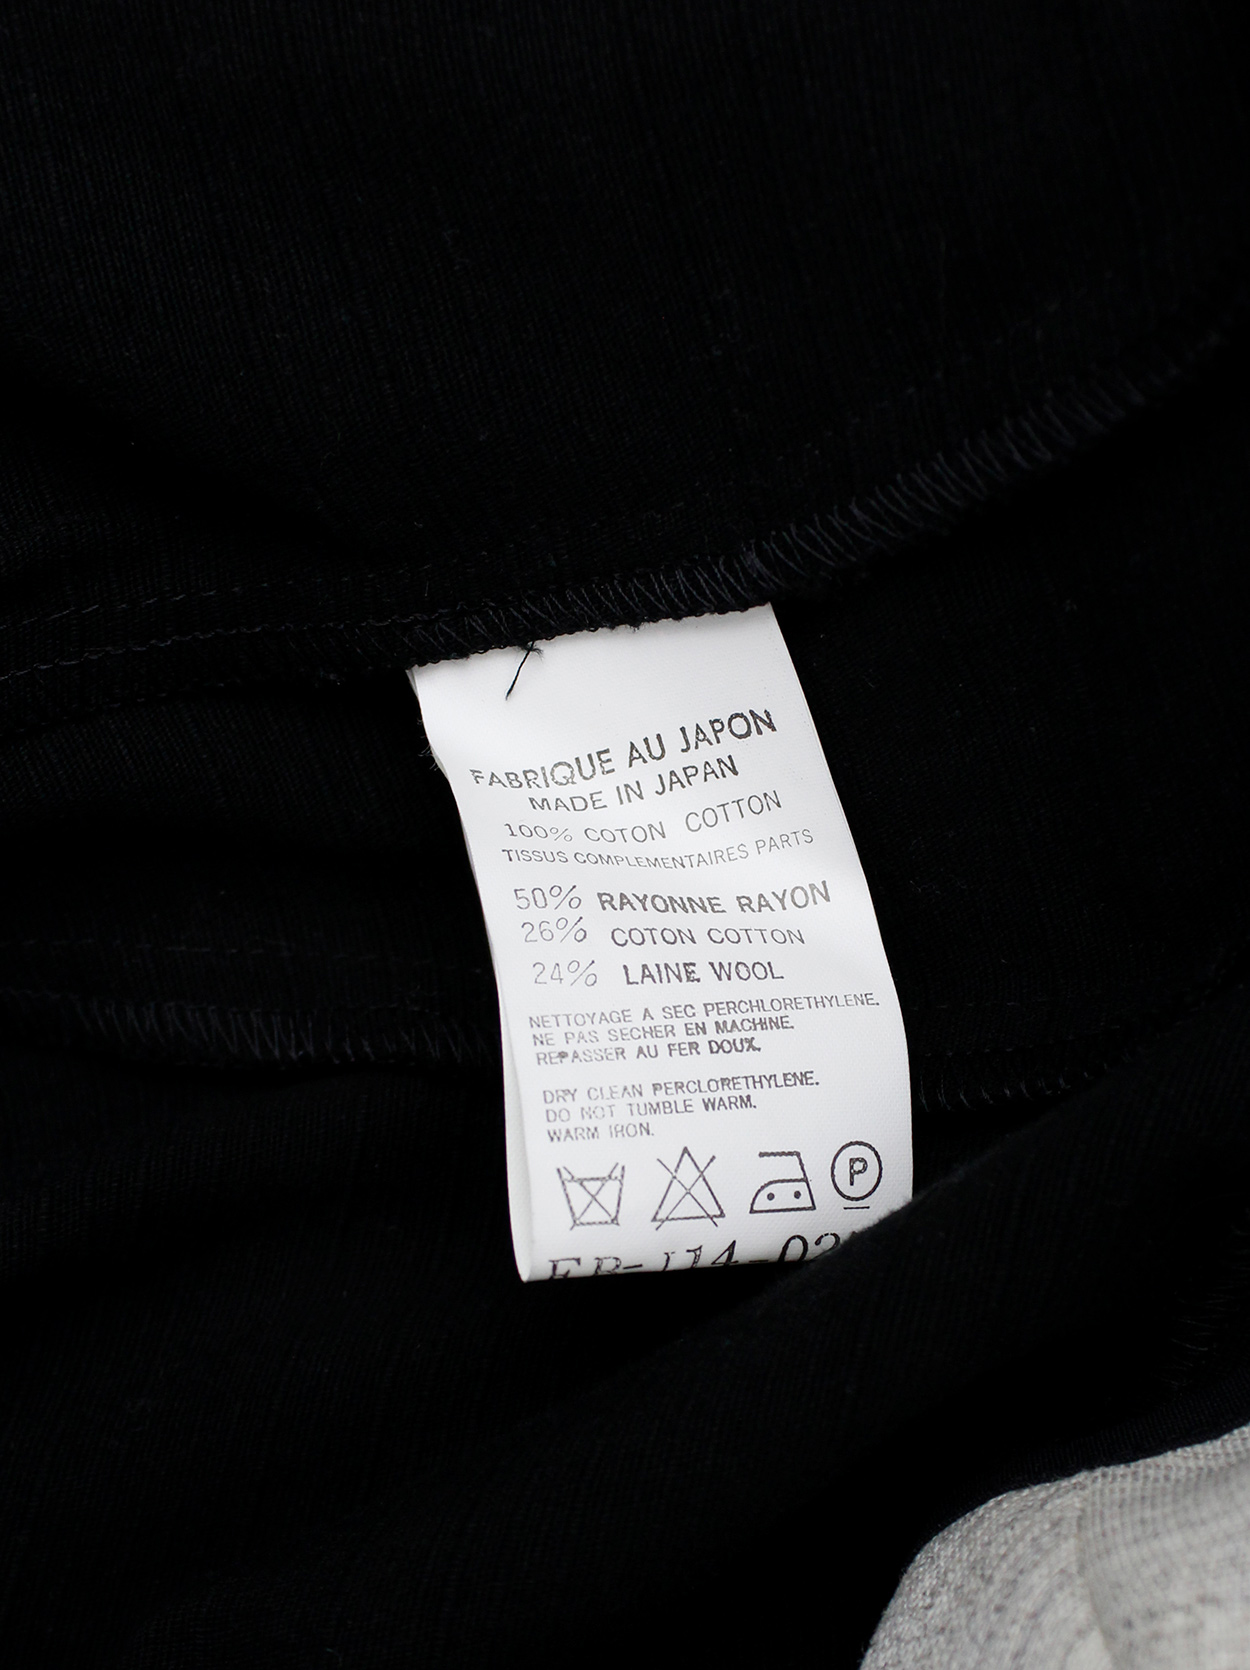 Yohji Yamamoto black peplum jacket with white frayed trims and cut out ...